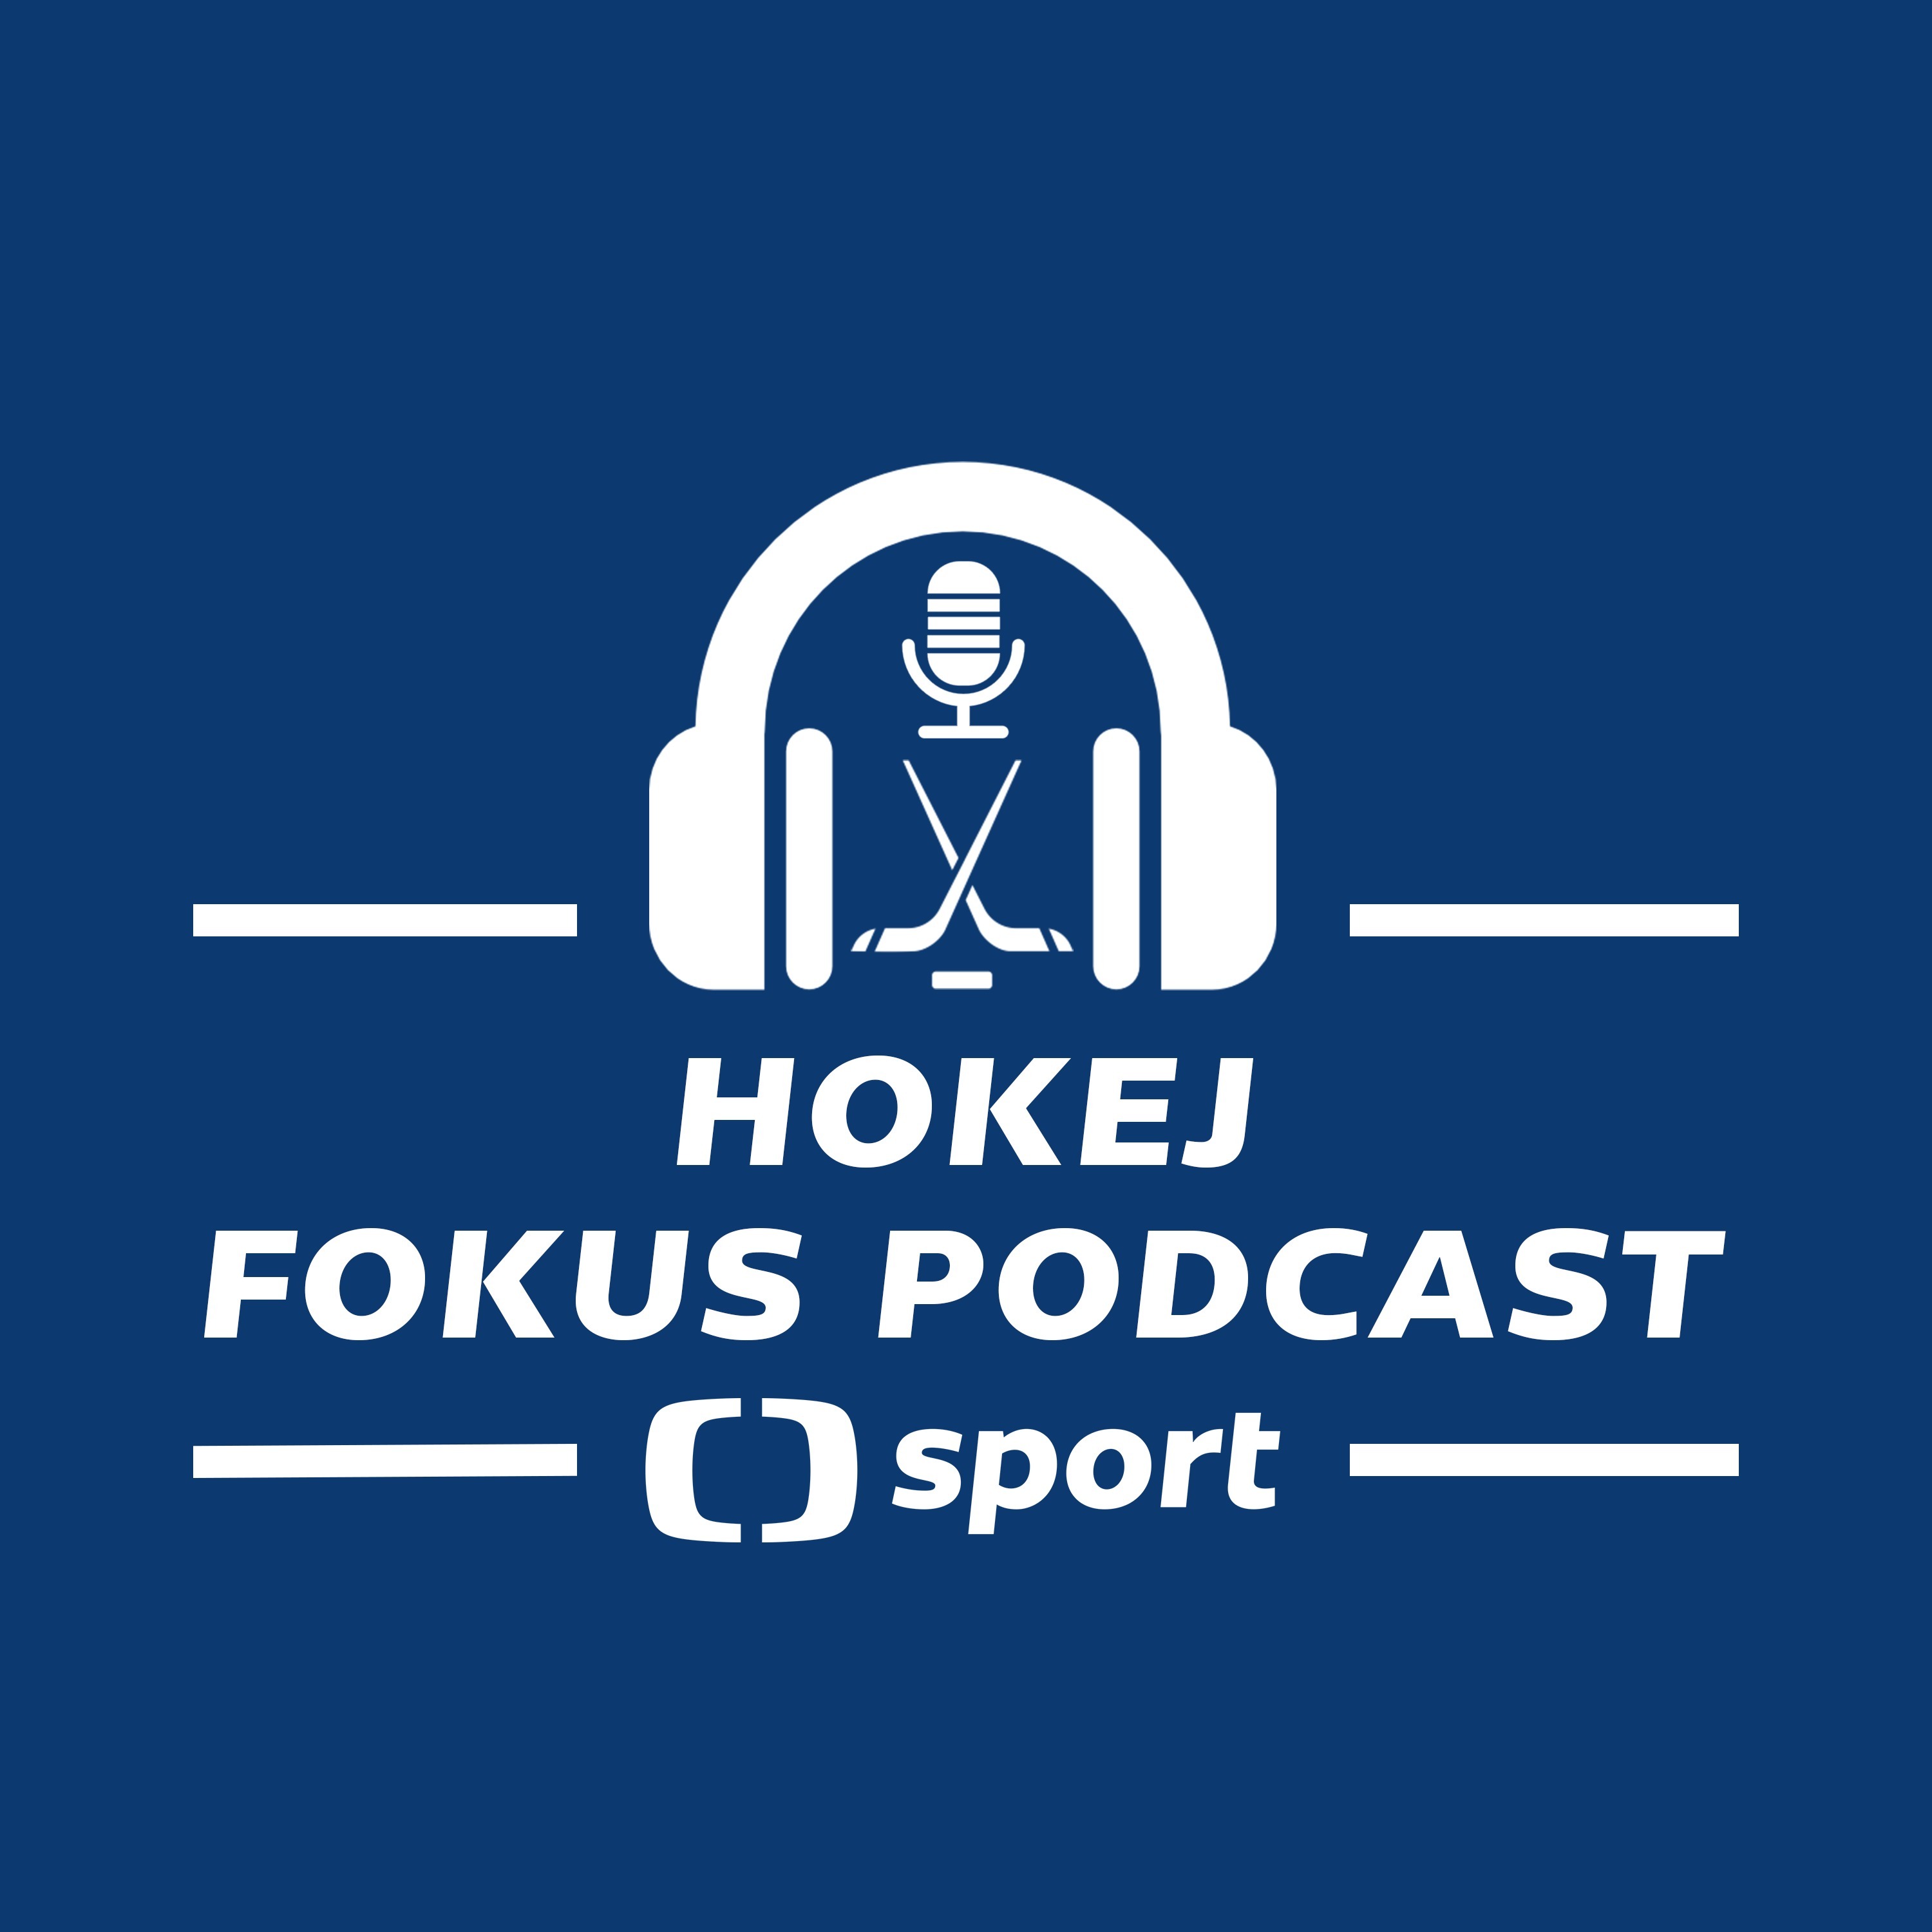 Hokej fokus podcast: Dosáhne dvacítka na medaili a překoná Ovečkin v gólech Gretzkyho?